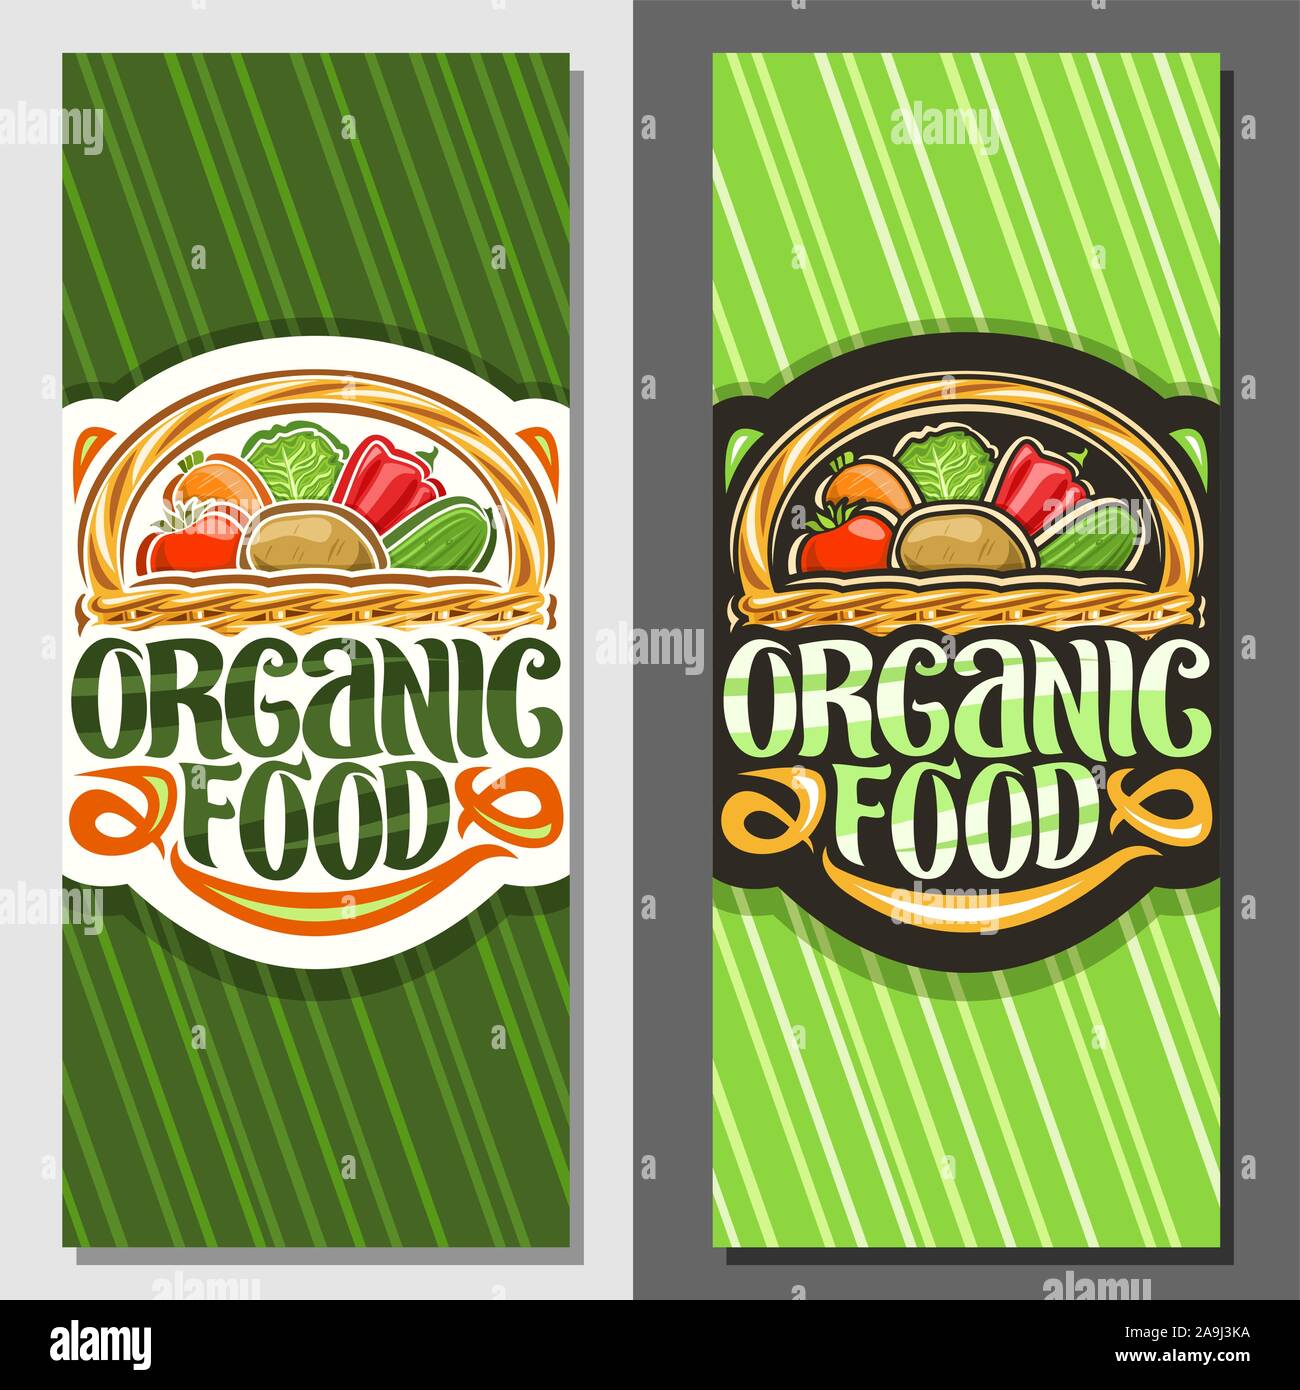 Vektor Banner für Bio-lebensmittel, Layouts mit Heap verschiedene Gemüse, dekorativen Beschriftung für Worte Bio-Lebensmittel, Illustration von Design Zeichen bo Stock Vektor